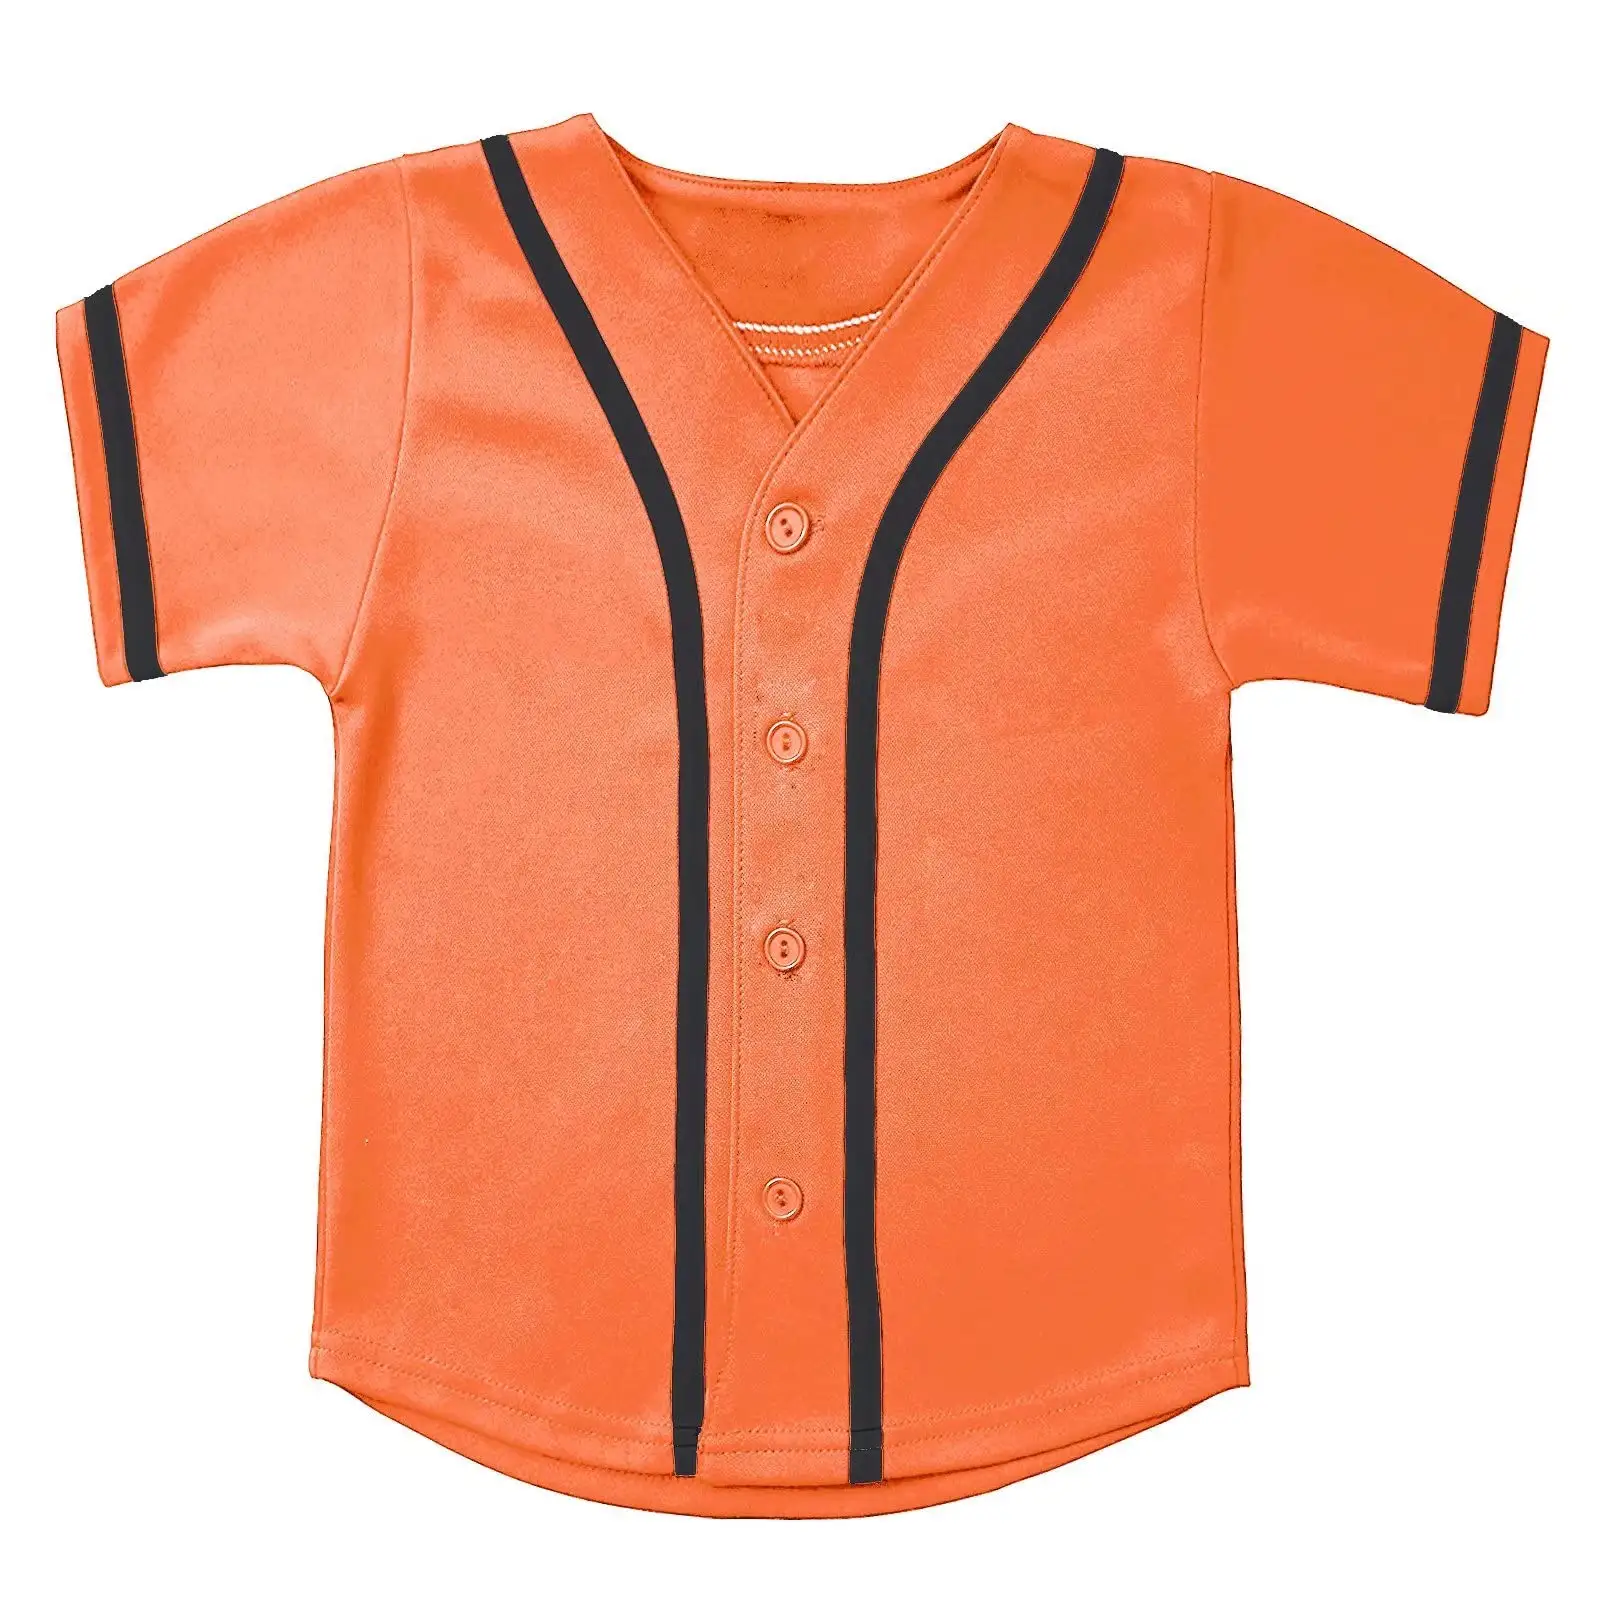 Jersey bisbol anak-anak, atasan kaus olahraga pribadi berkancing Hip Hop untuk anak laki-laki dan perempuan